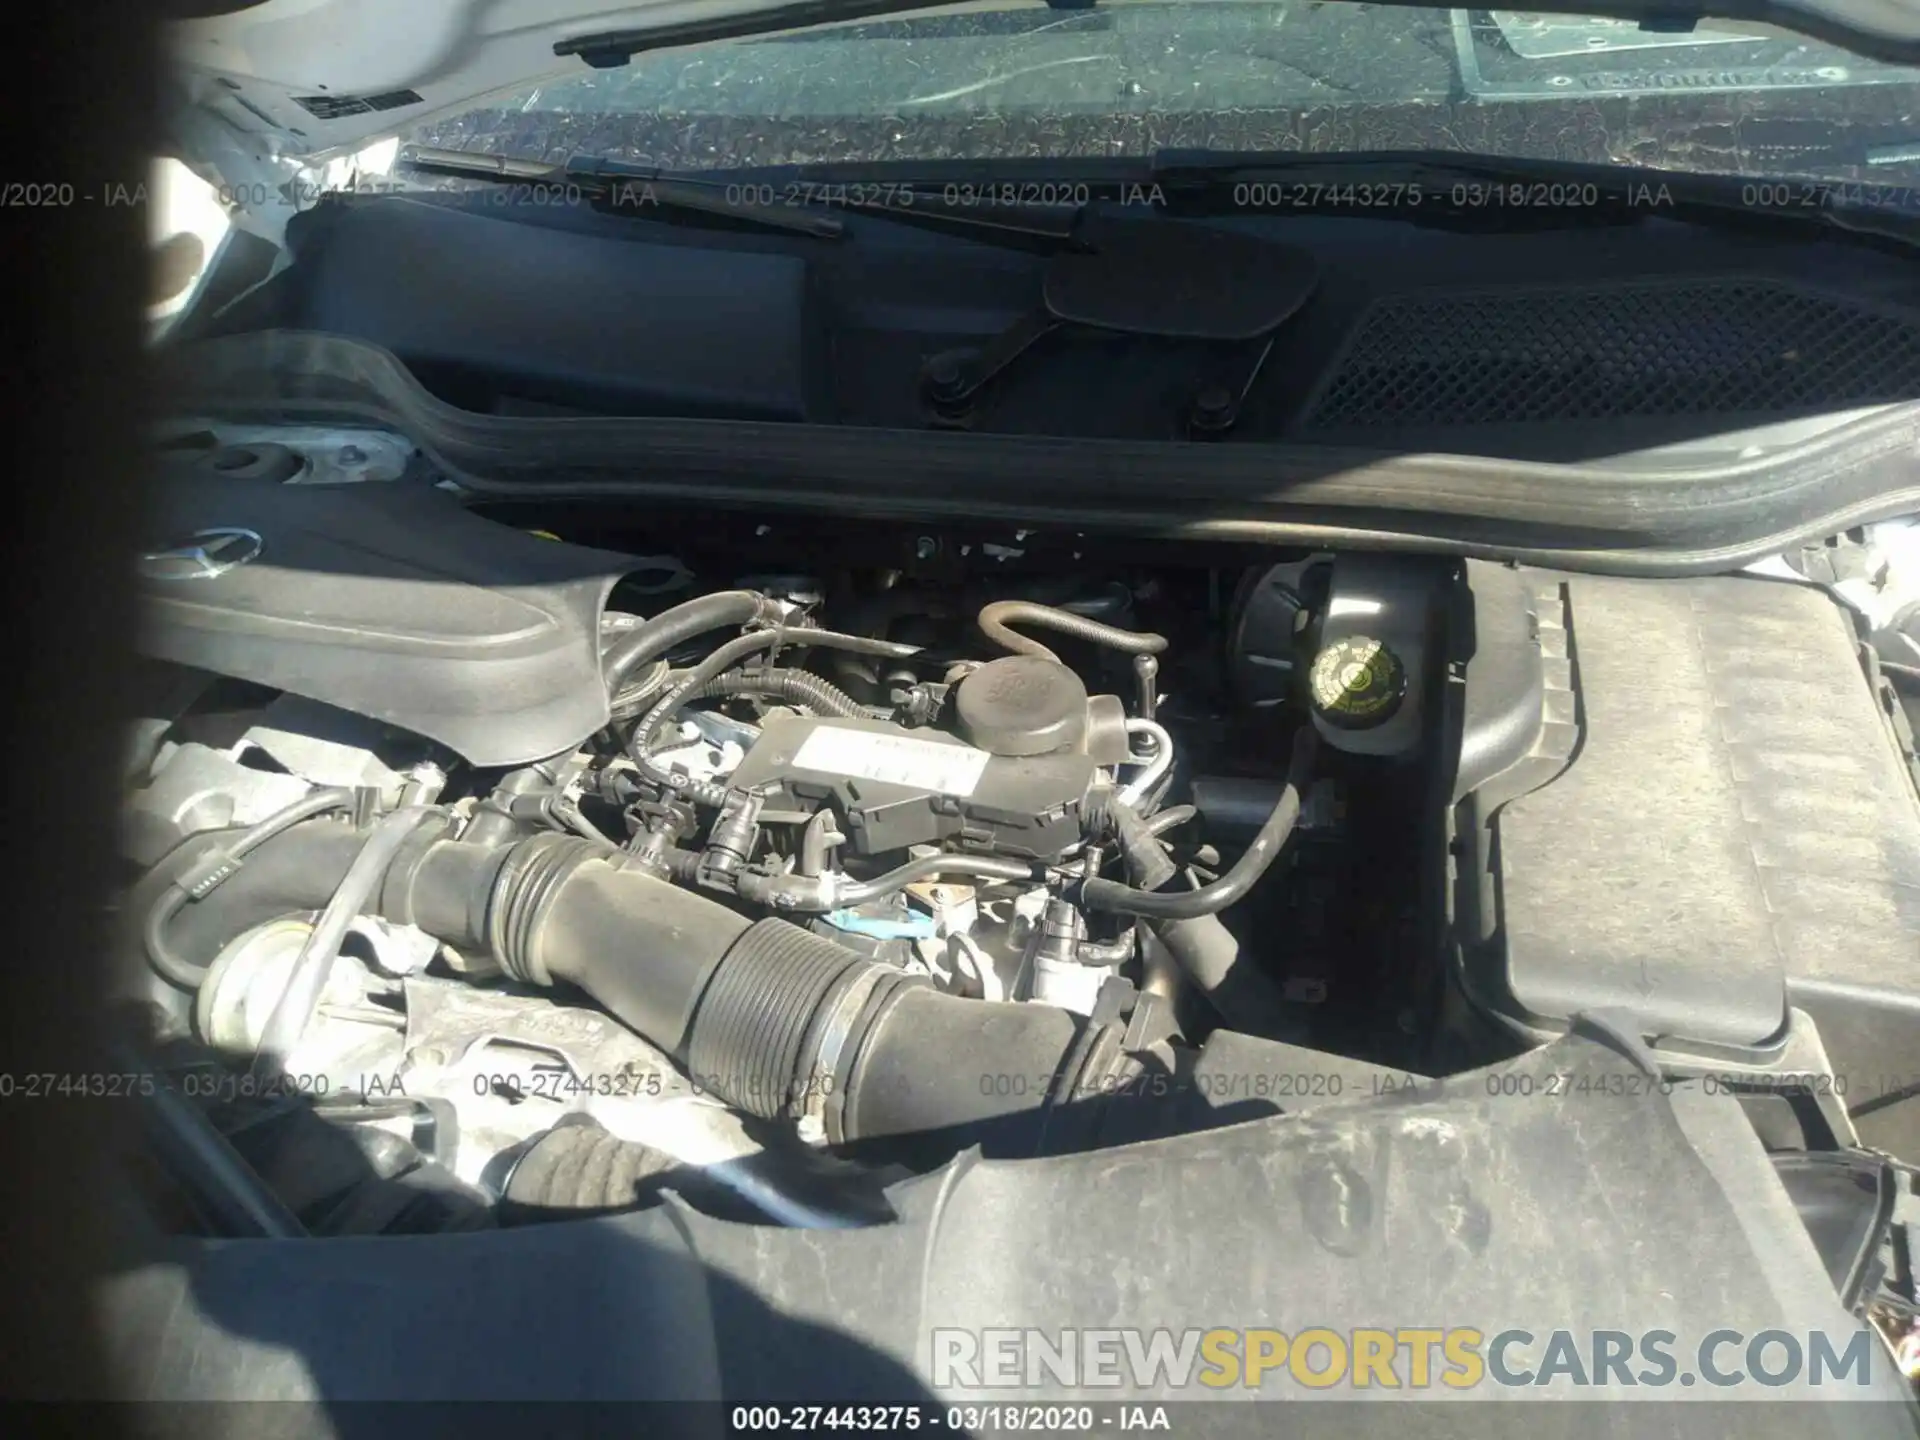 10 Photograph of a damaged car WDDSJ4GBXKN770562 MERCEDES-BENZ CLA 2019